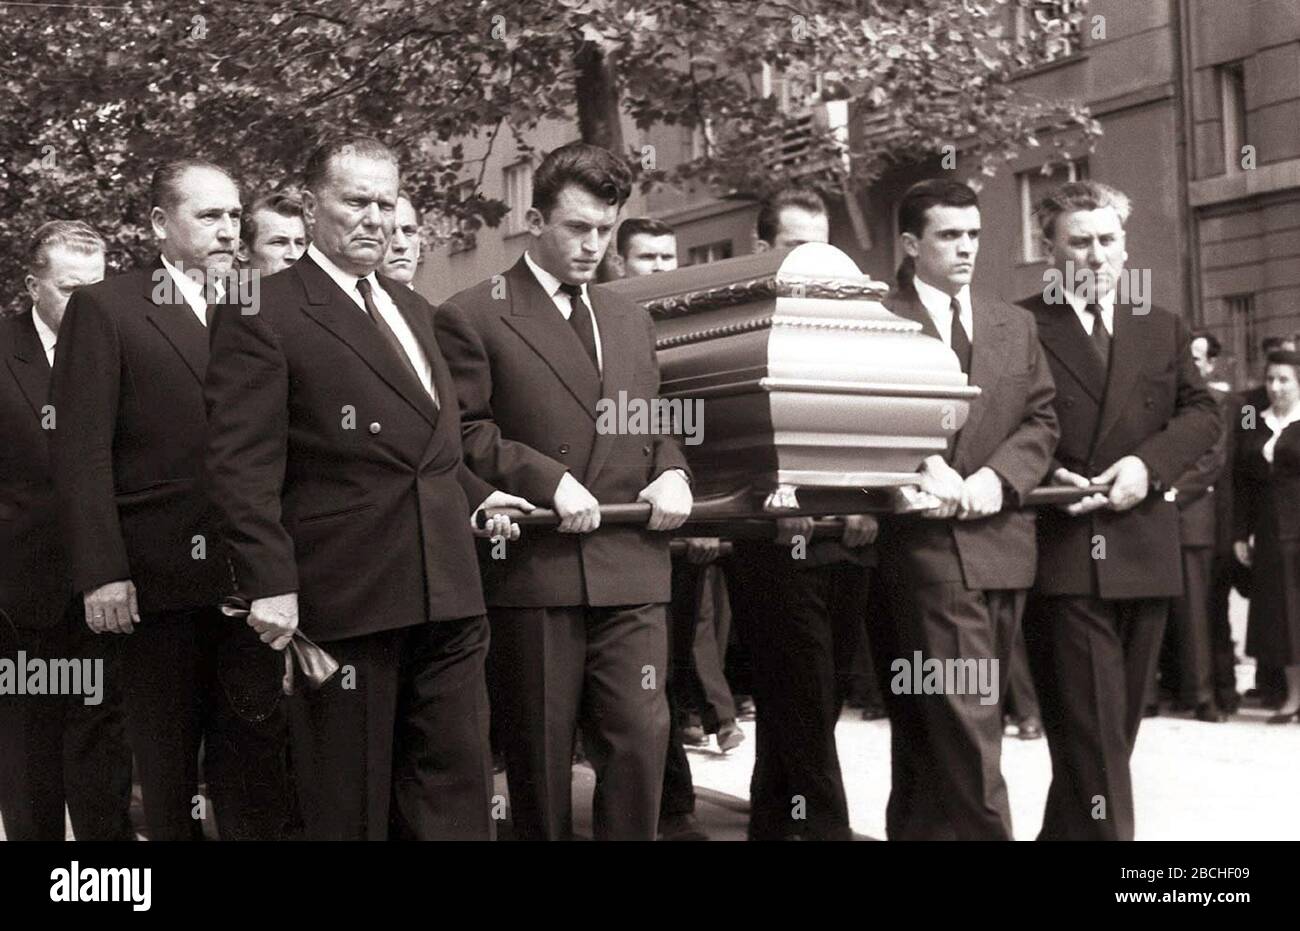 Slovenščina: Pogreb Đura Salaja na zagrebškem Mirogoju. Na sliki Josip Broz  Tito, Ivan Gošnjak, Miha Marinko,